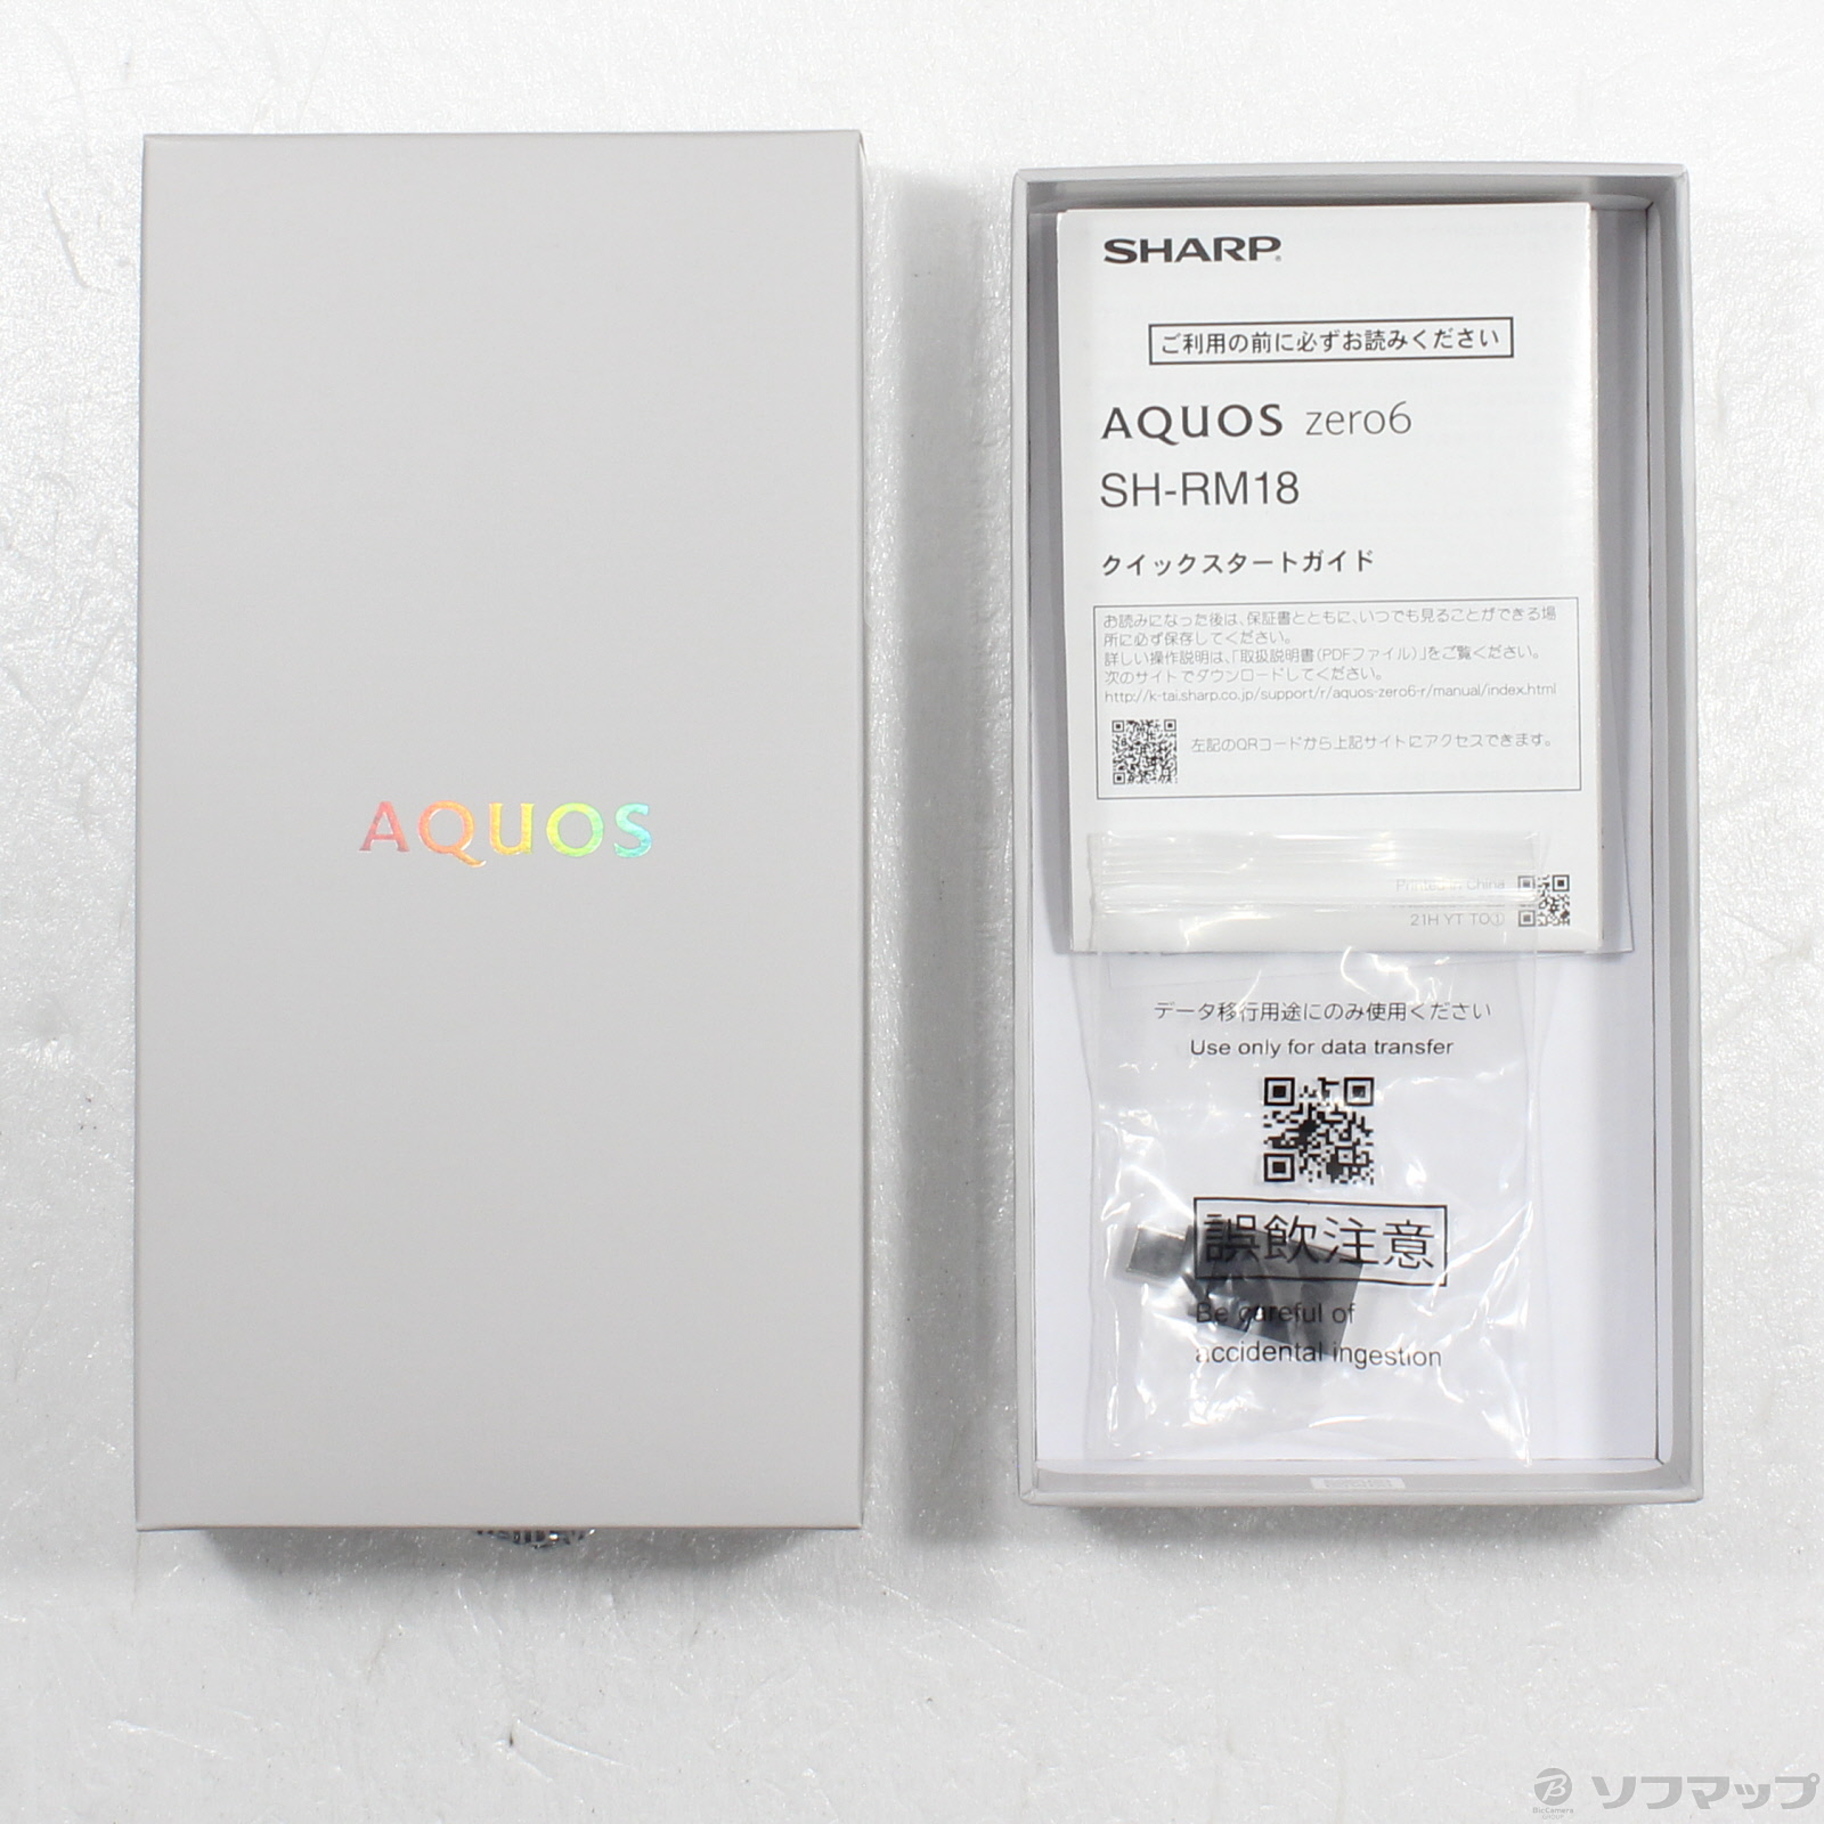 AQUOS zero6 パープル 128 GB SIMフリー SH-RM18-